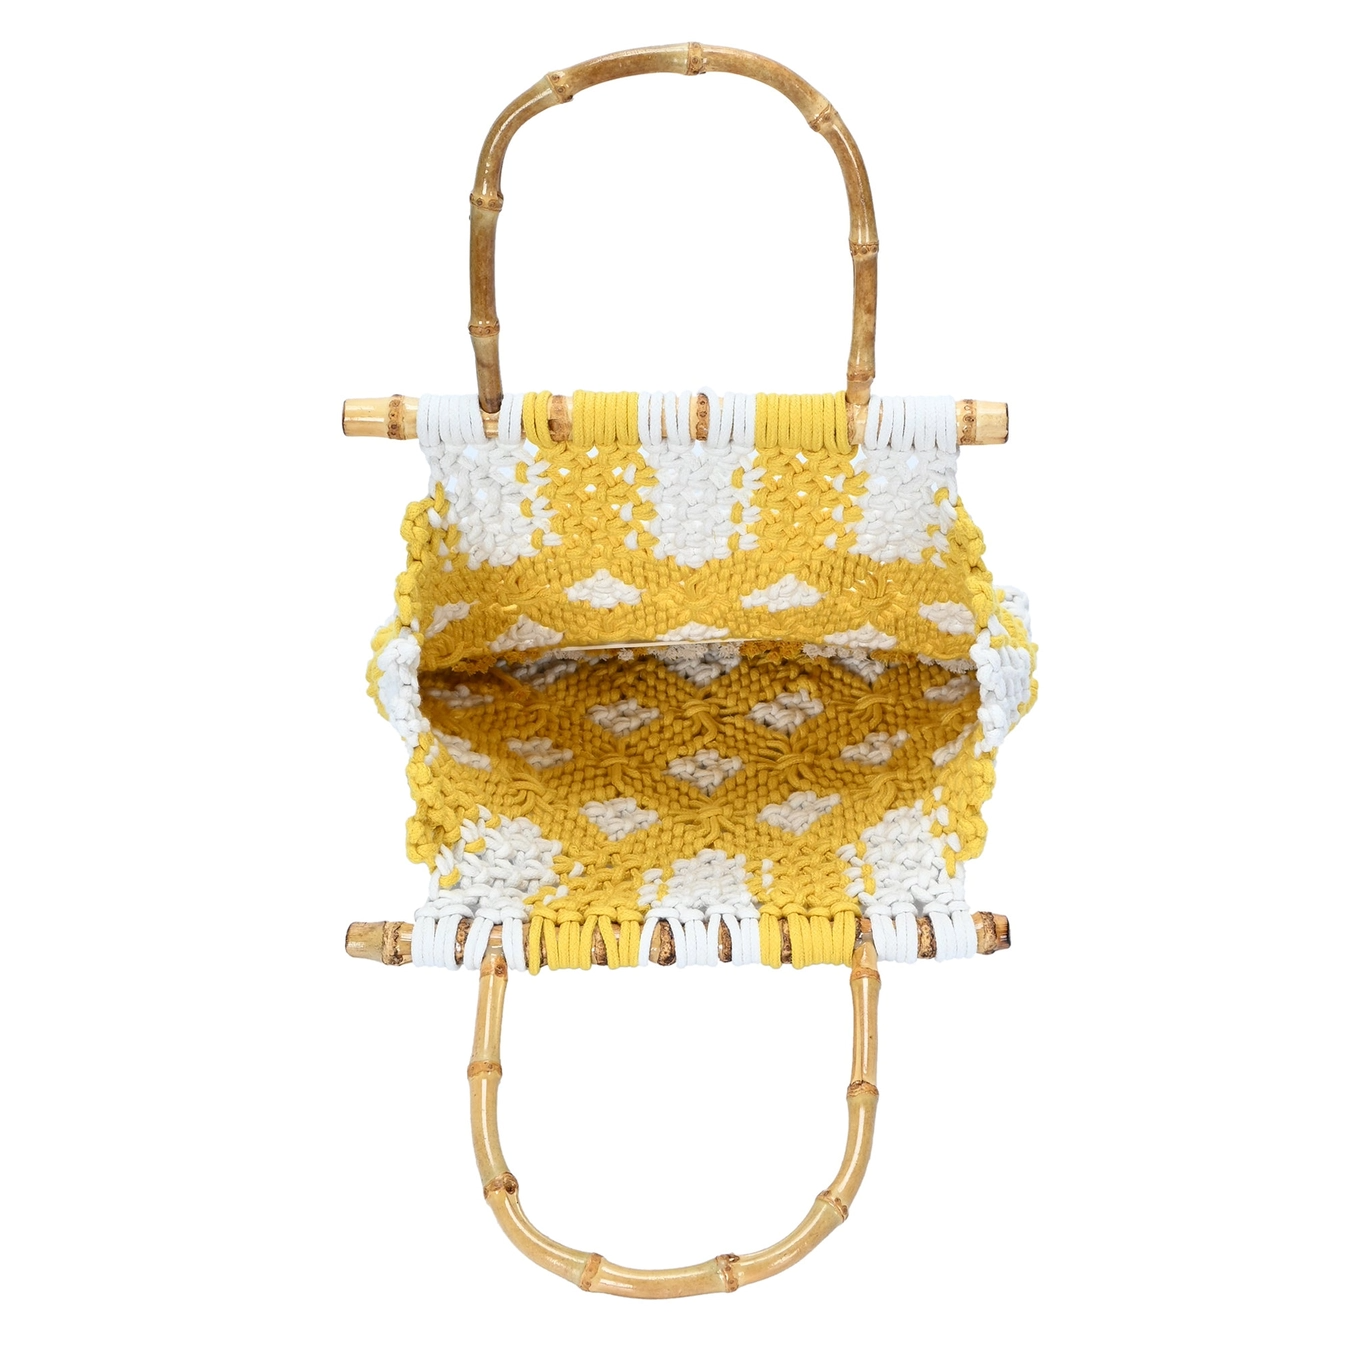 Sky Crochet Knitted Handbag